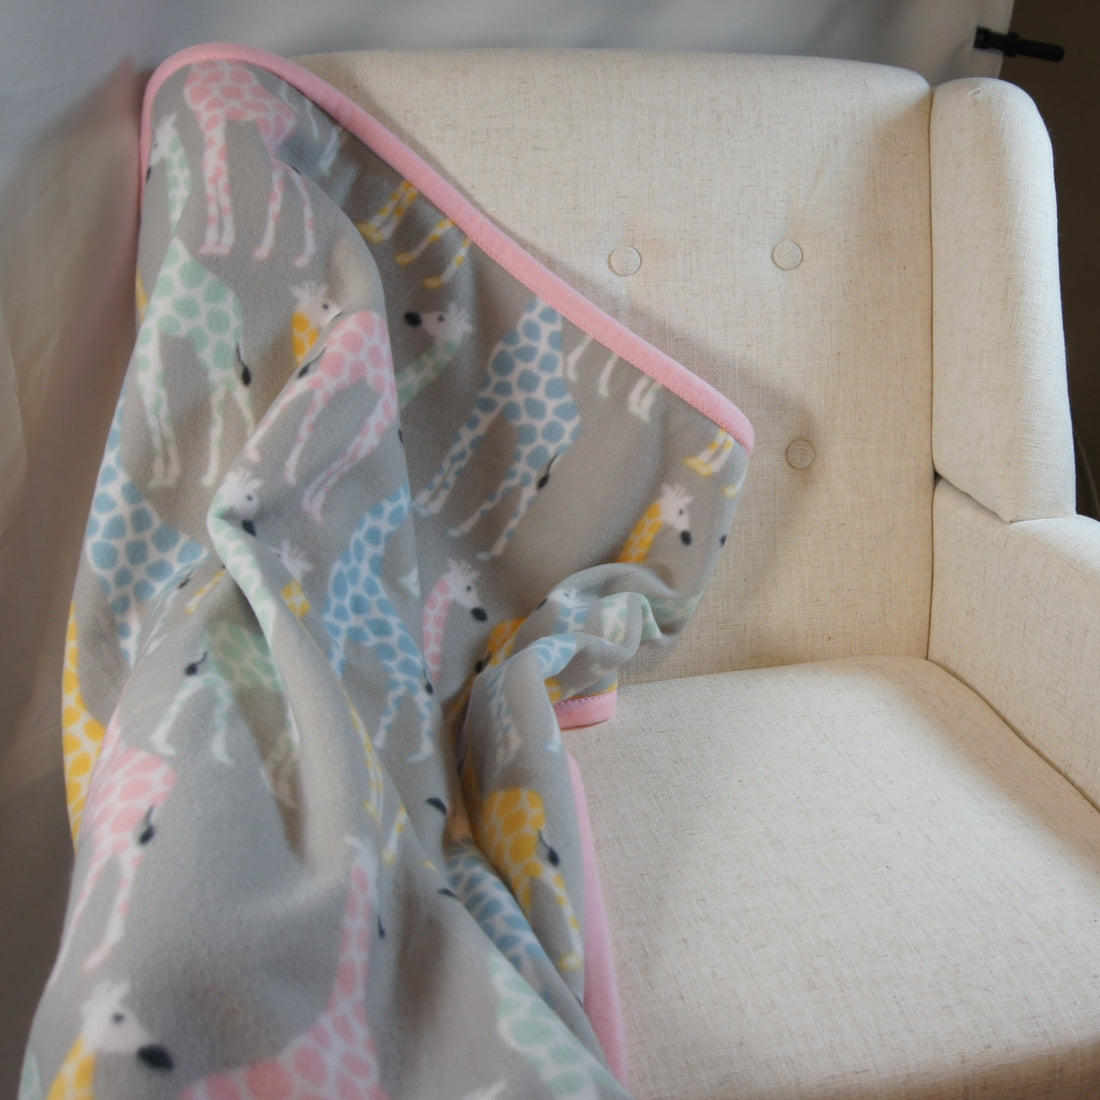 Baby - Blanket - Yeti – Fleece Centric